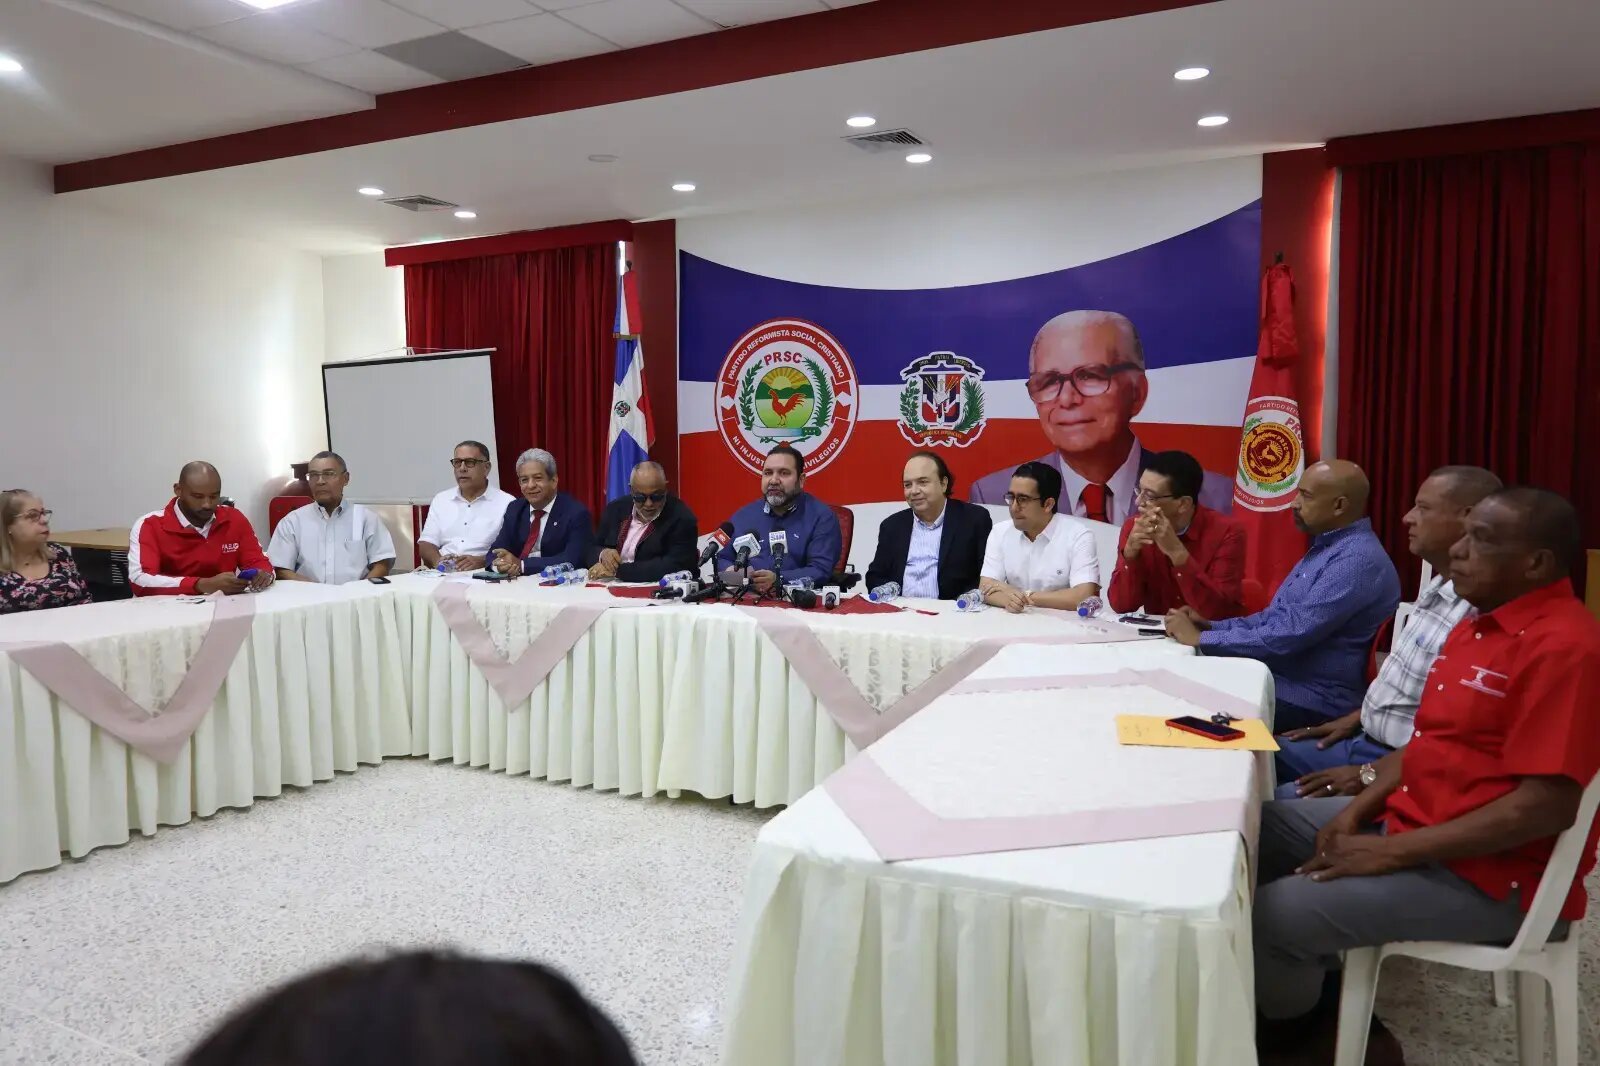 El Presidente Luis Abinader Inicia Campaña Oficial con Acto Multitudinario del PRSC